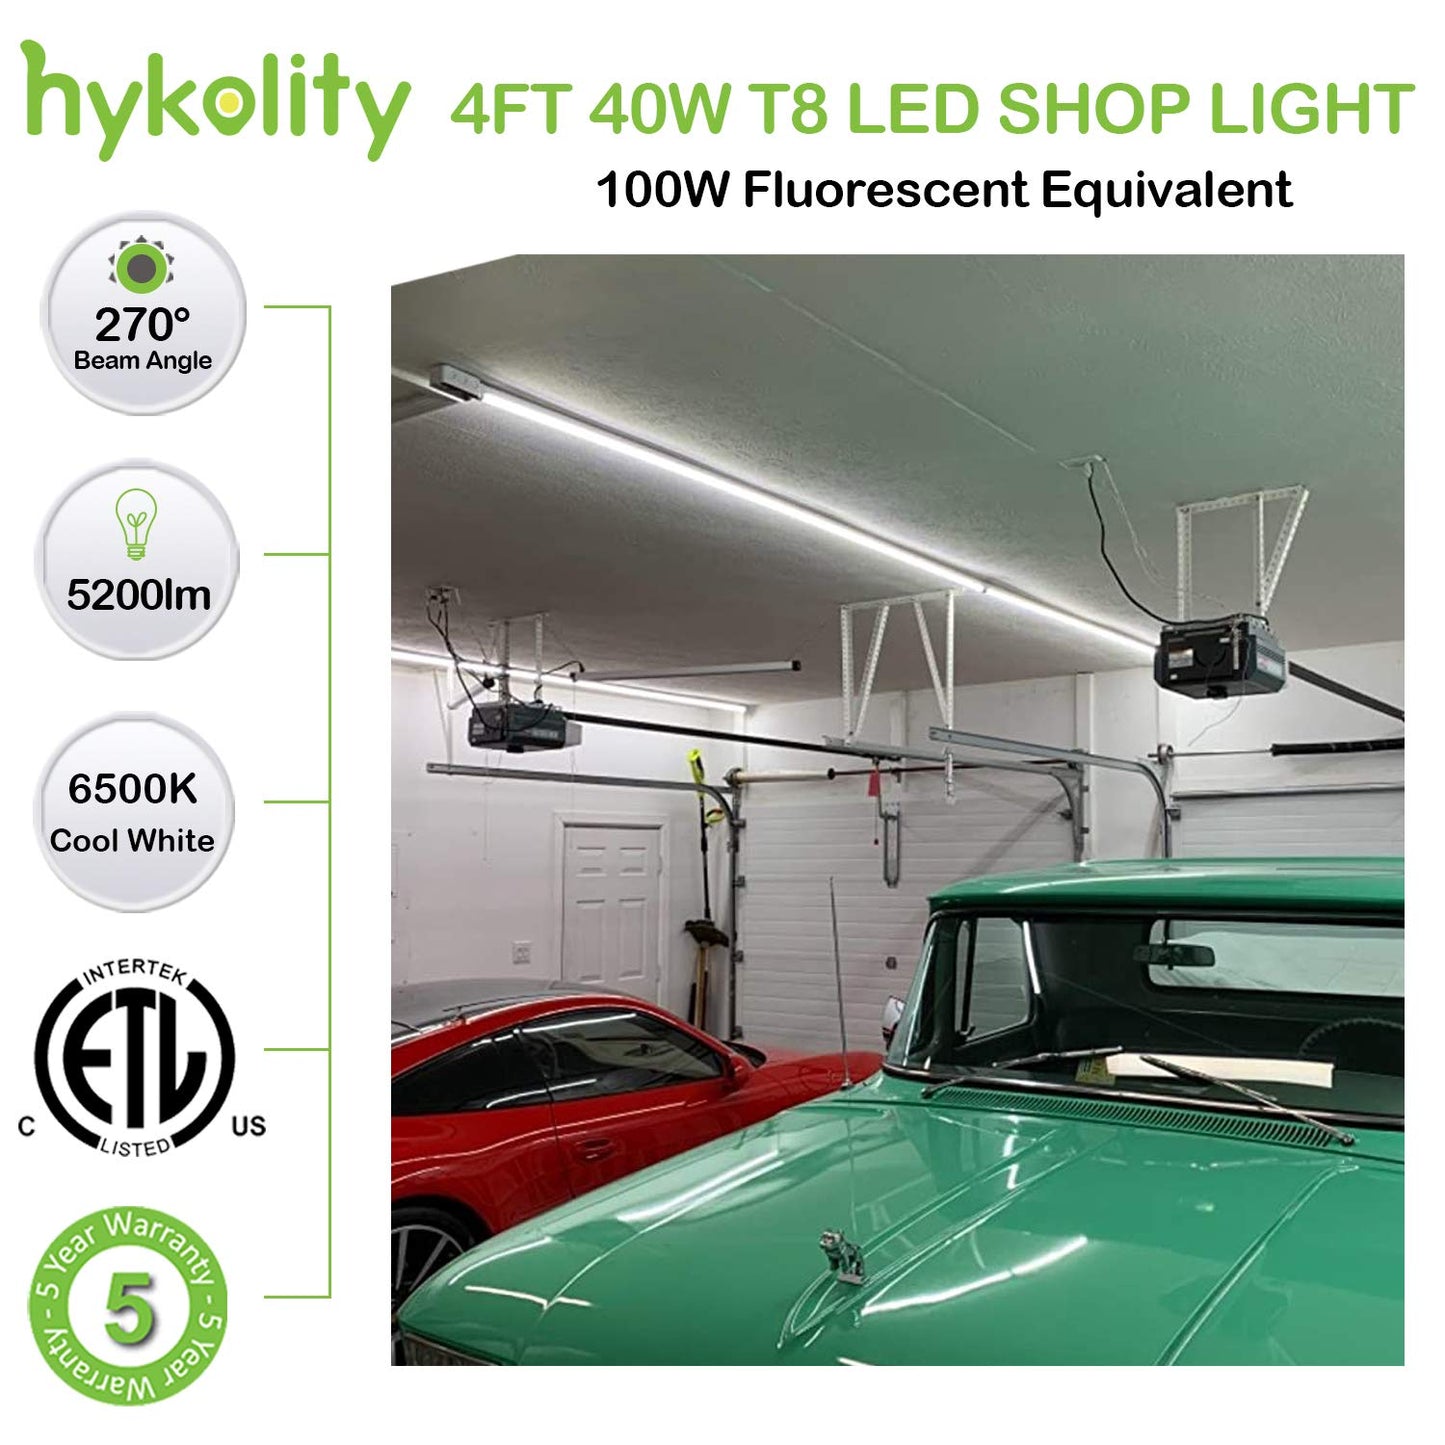 6 Pack 4FT LED Shop Light, 40W, 5200LM, 6500K Super Bright White, V Shape Integrated T8 LED Tube Light, 4 Foot Linkable Shop Lights With Built-in